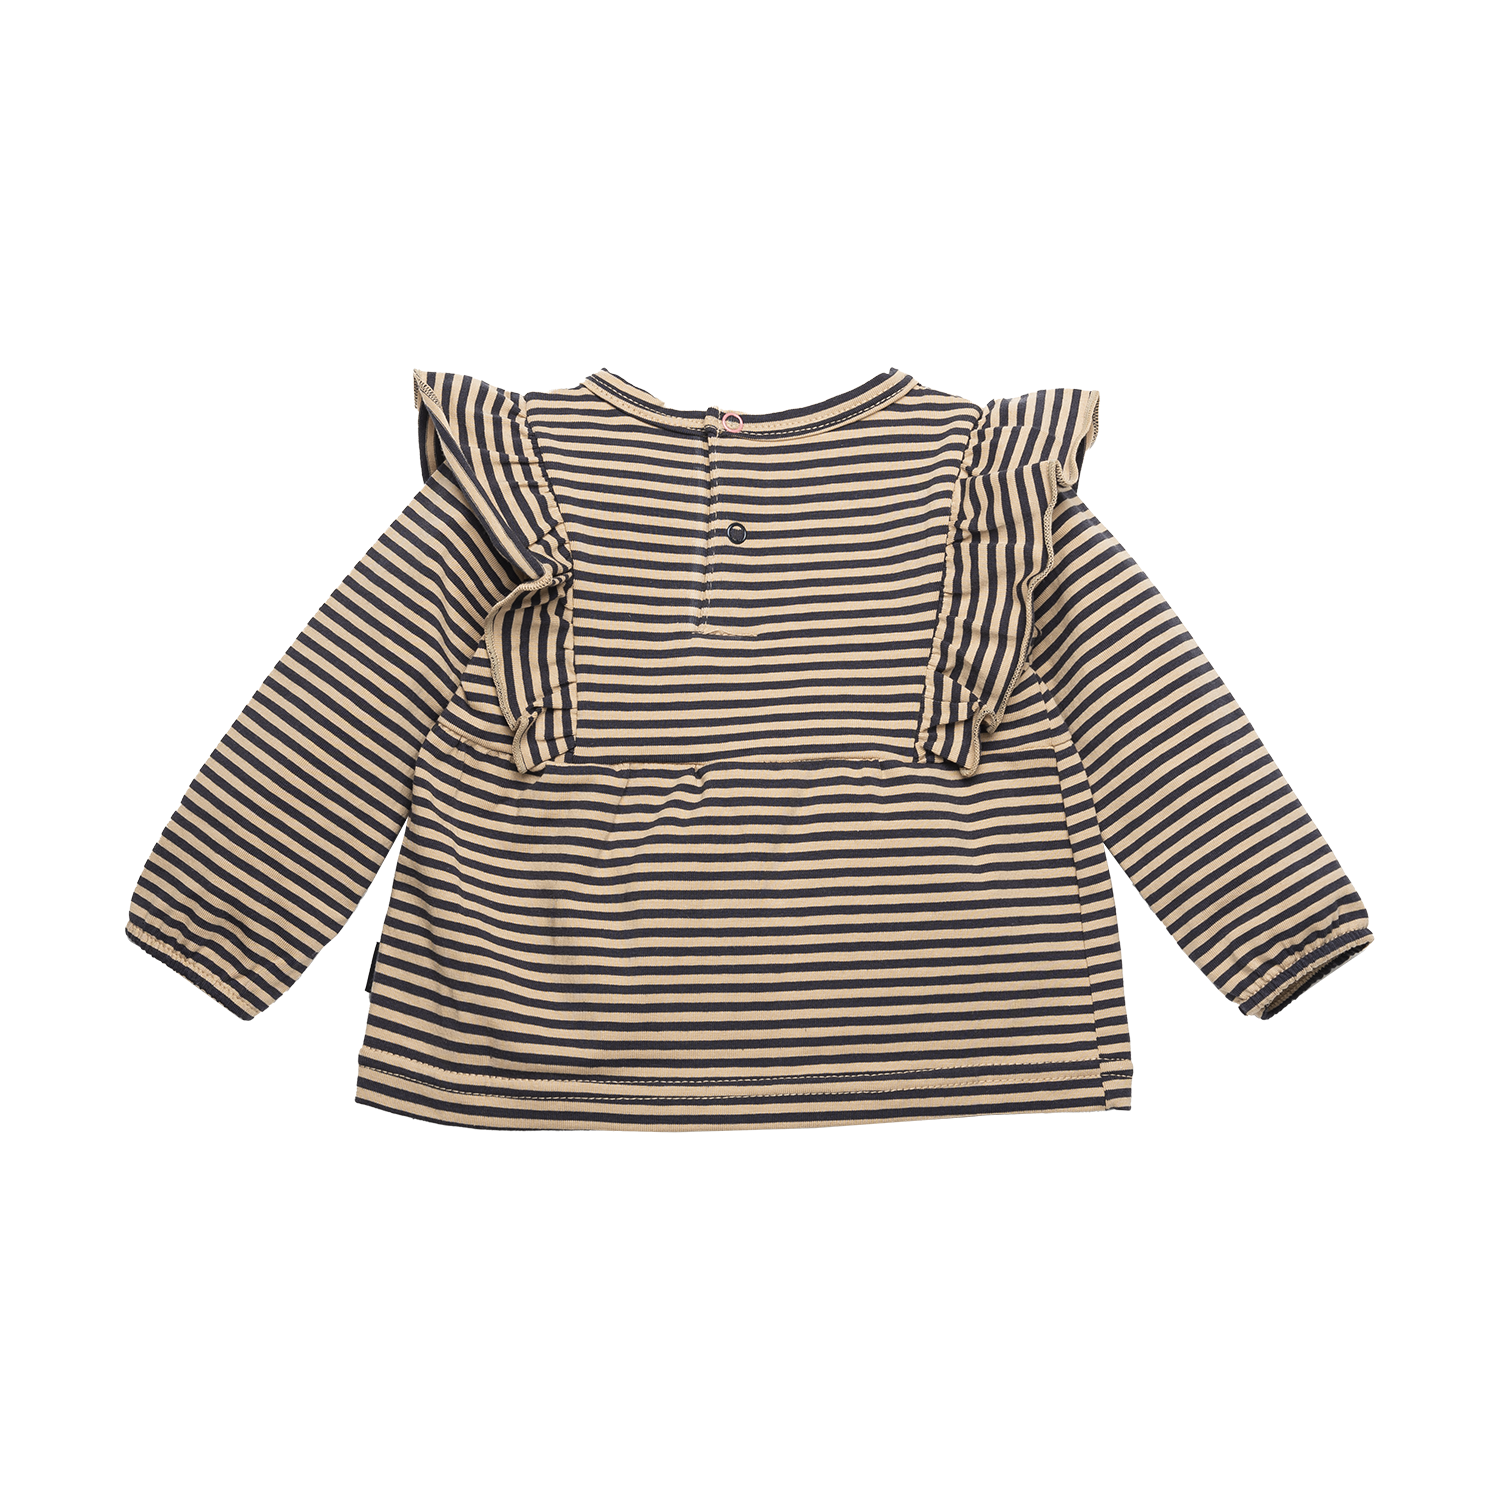 Meisjes Shirt l.sl. Striped Ruffles van B.E.S.S. in de kleur Sand in maat 68.